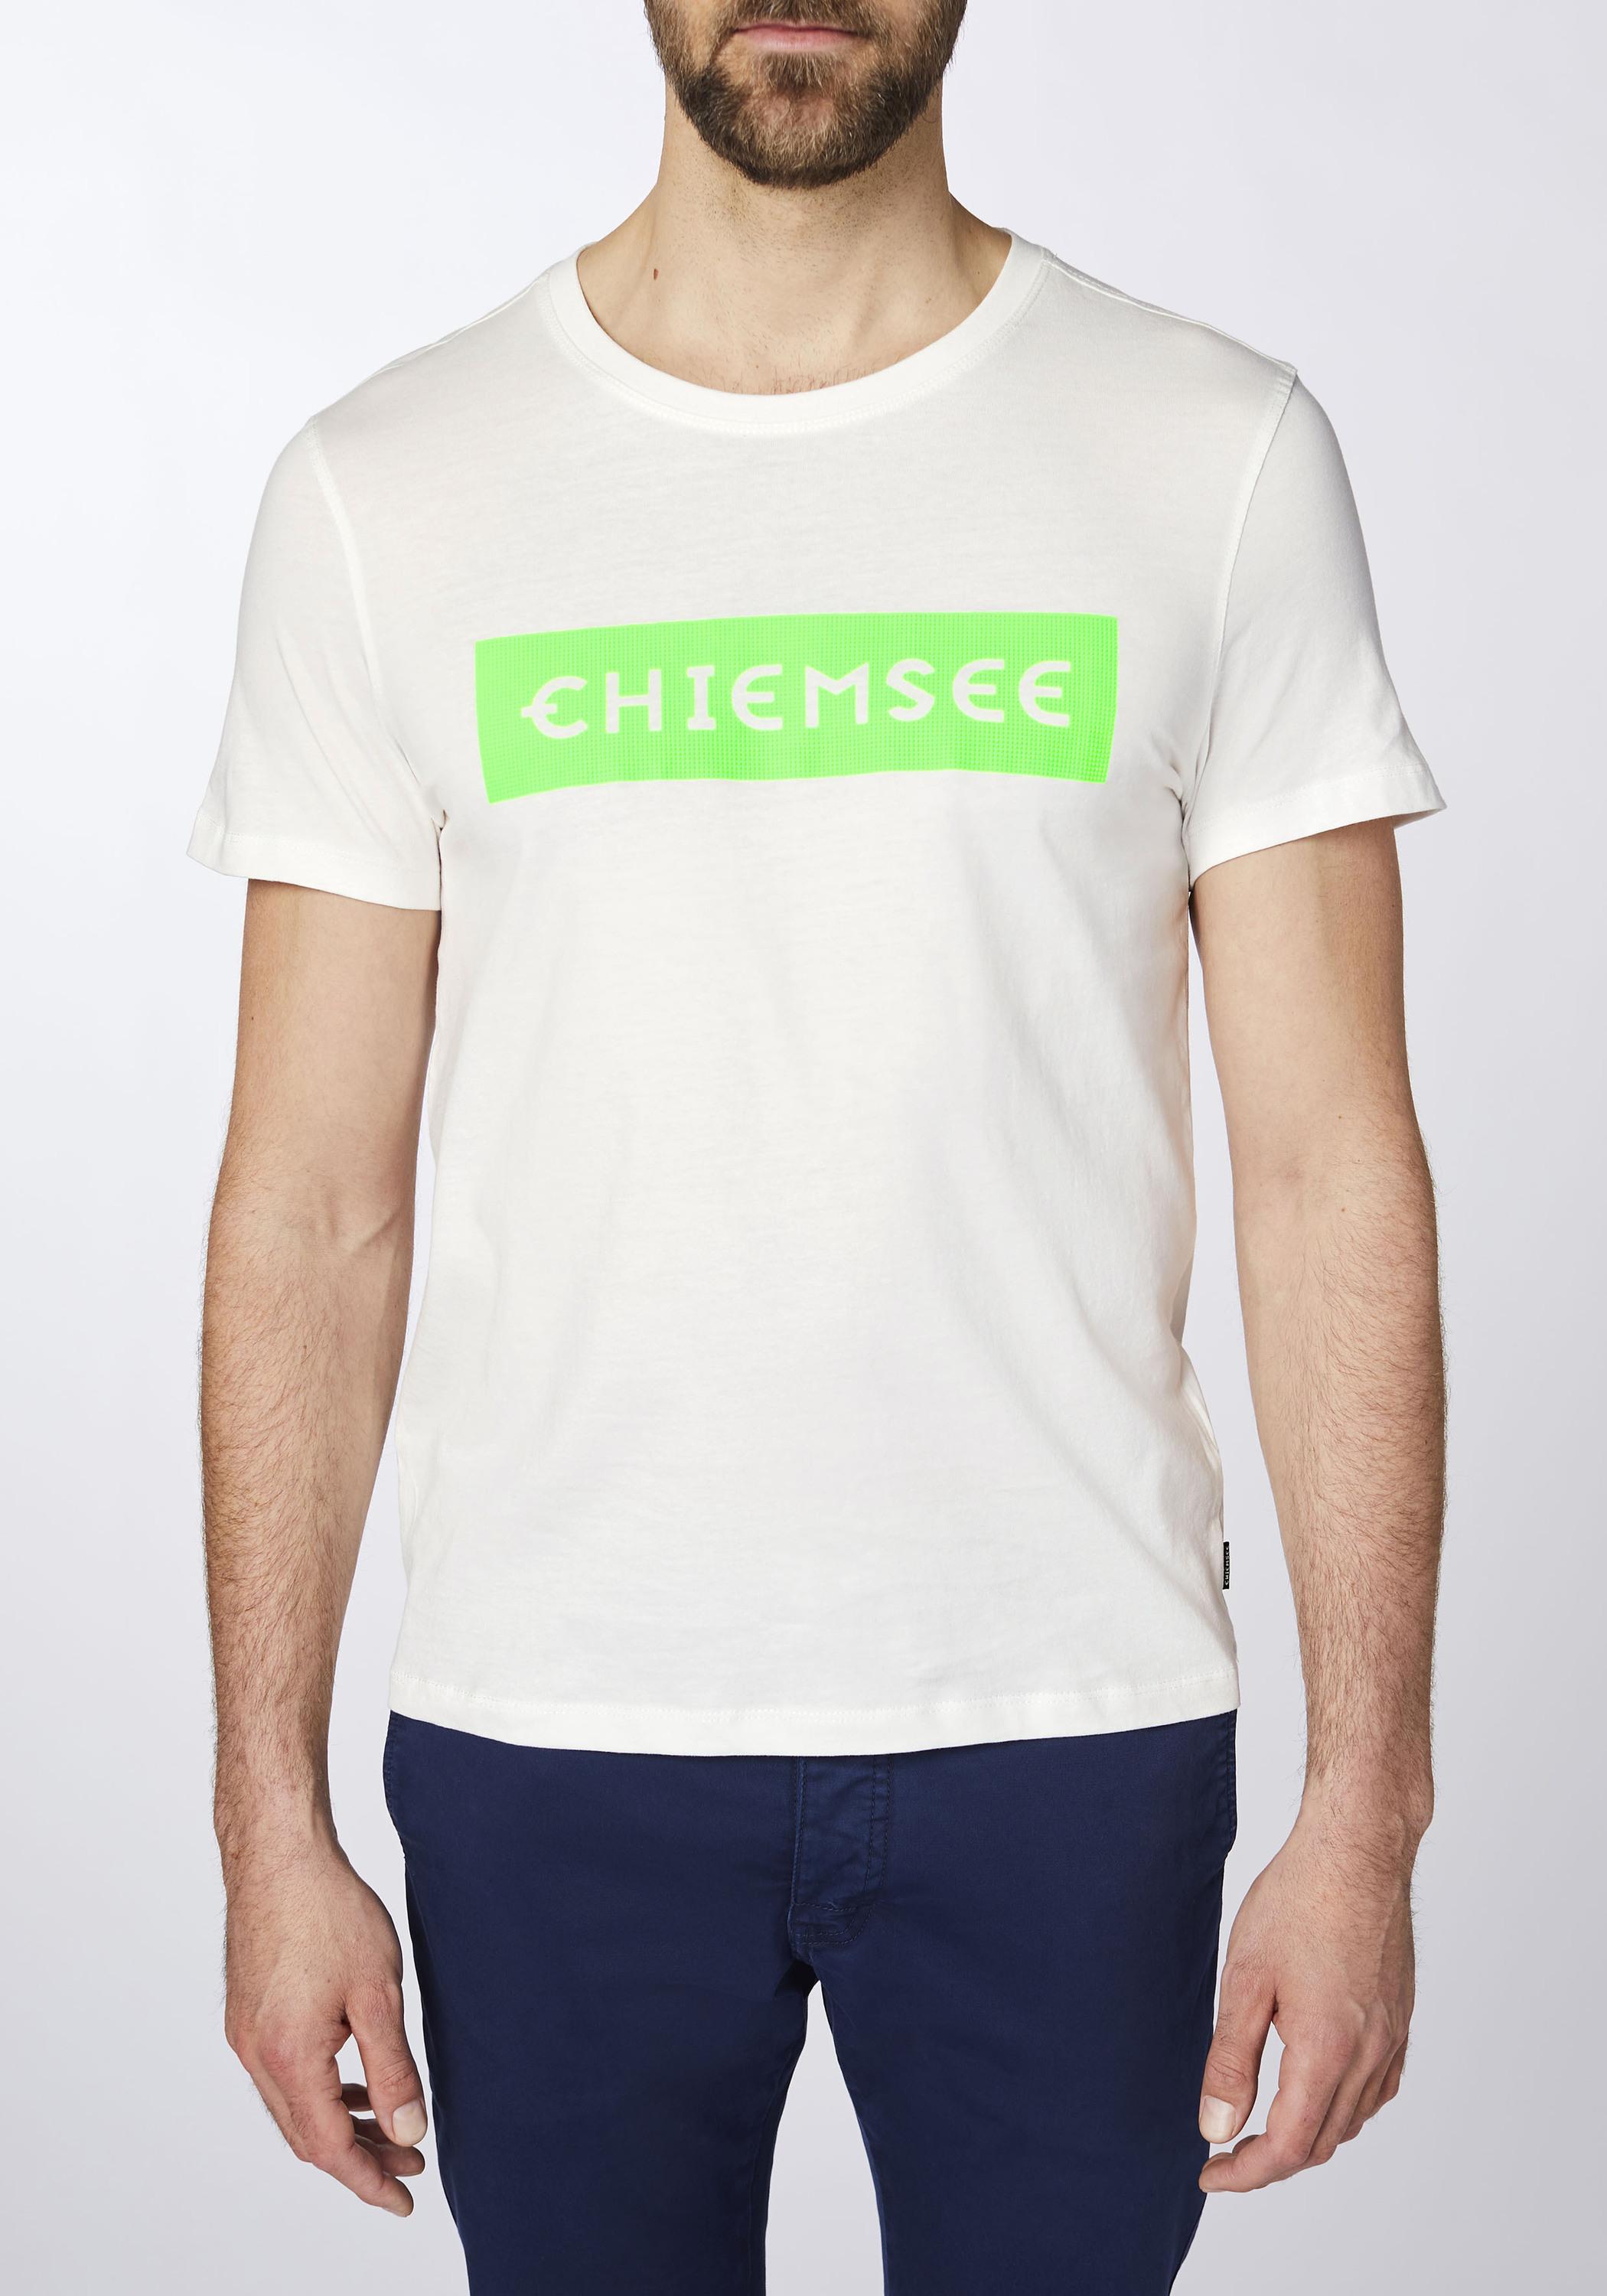 Online Dif Herren Wht/Md T-Shirt kaufen von Grn Chiemsee Shop SportScheck im T-Shirt